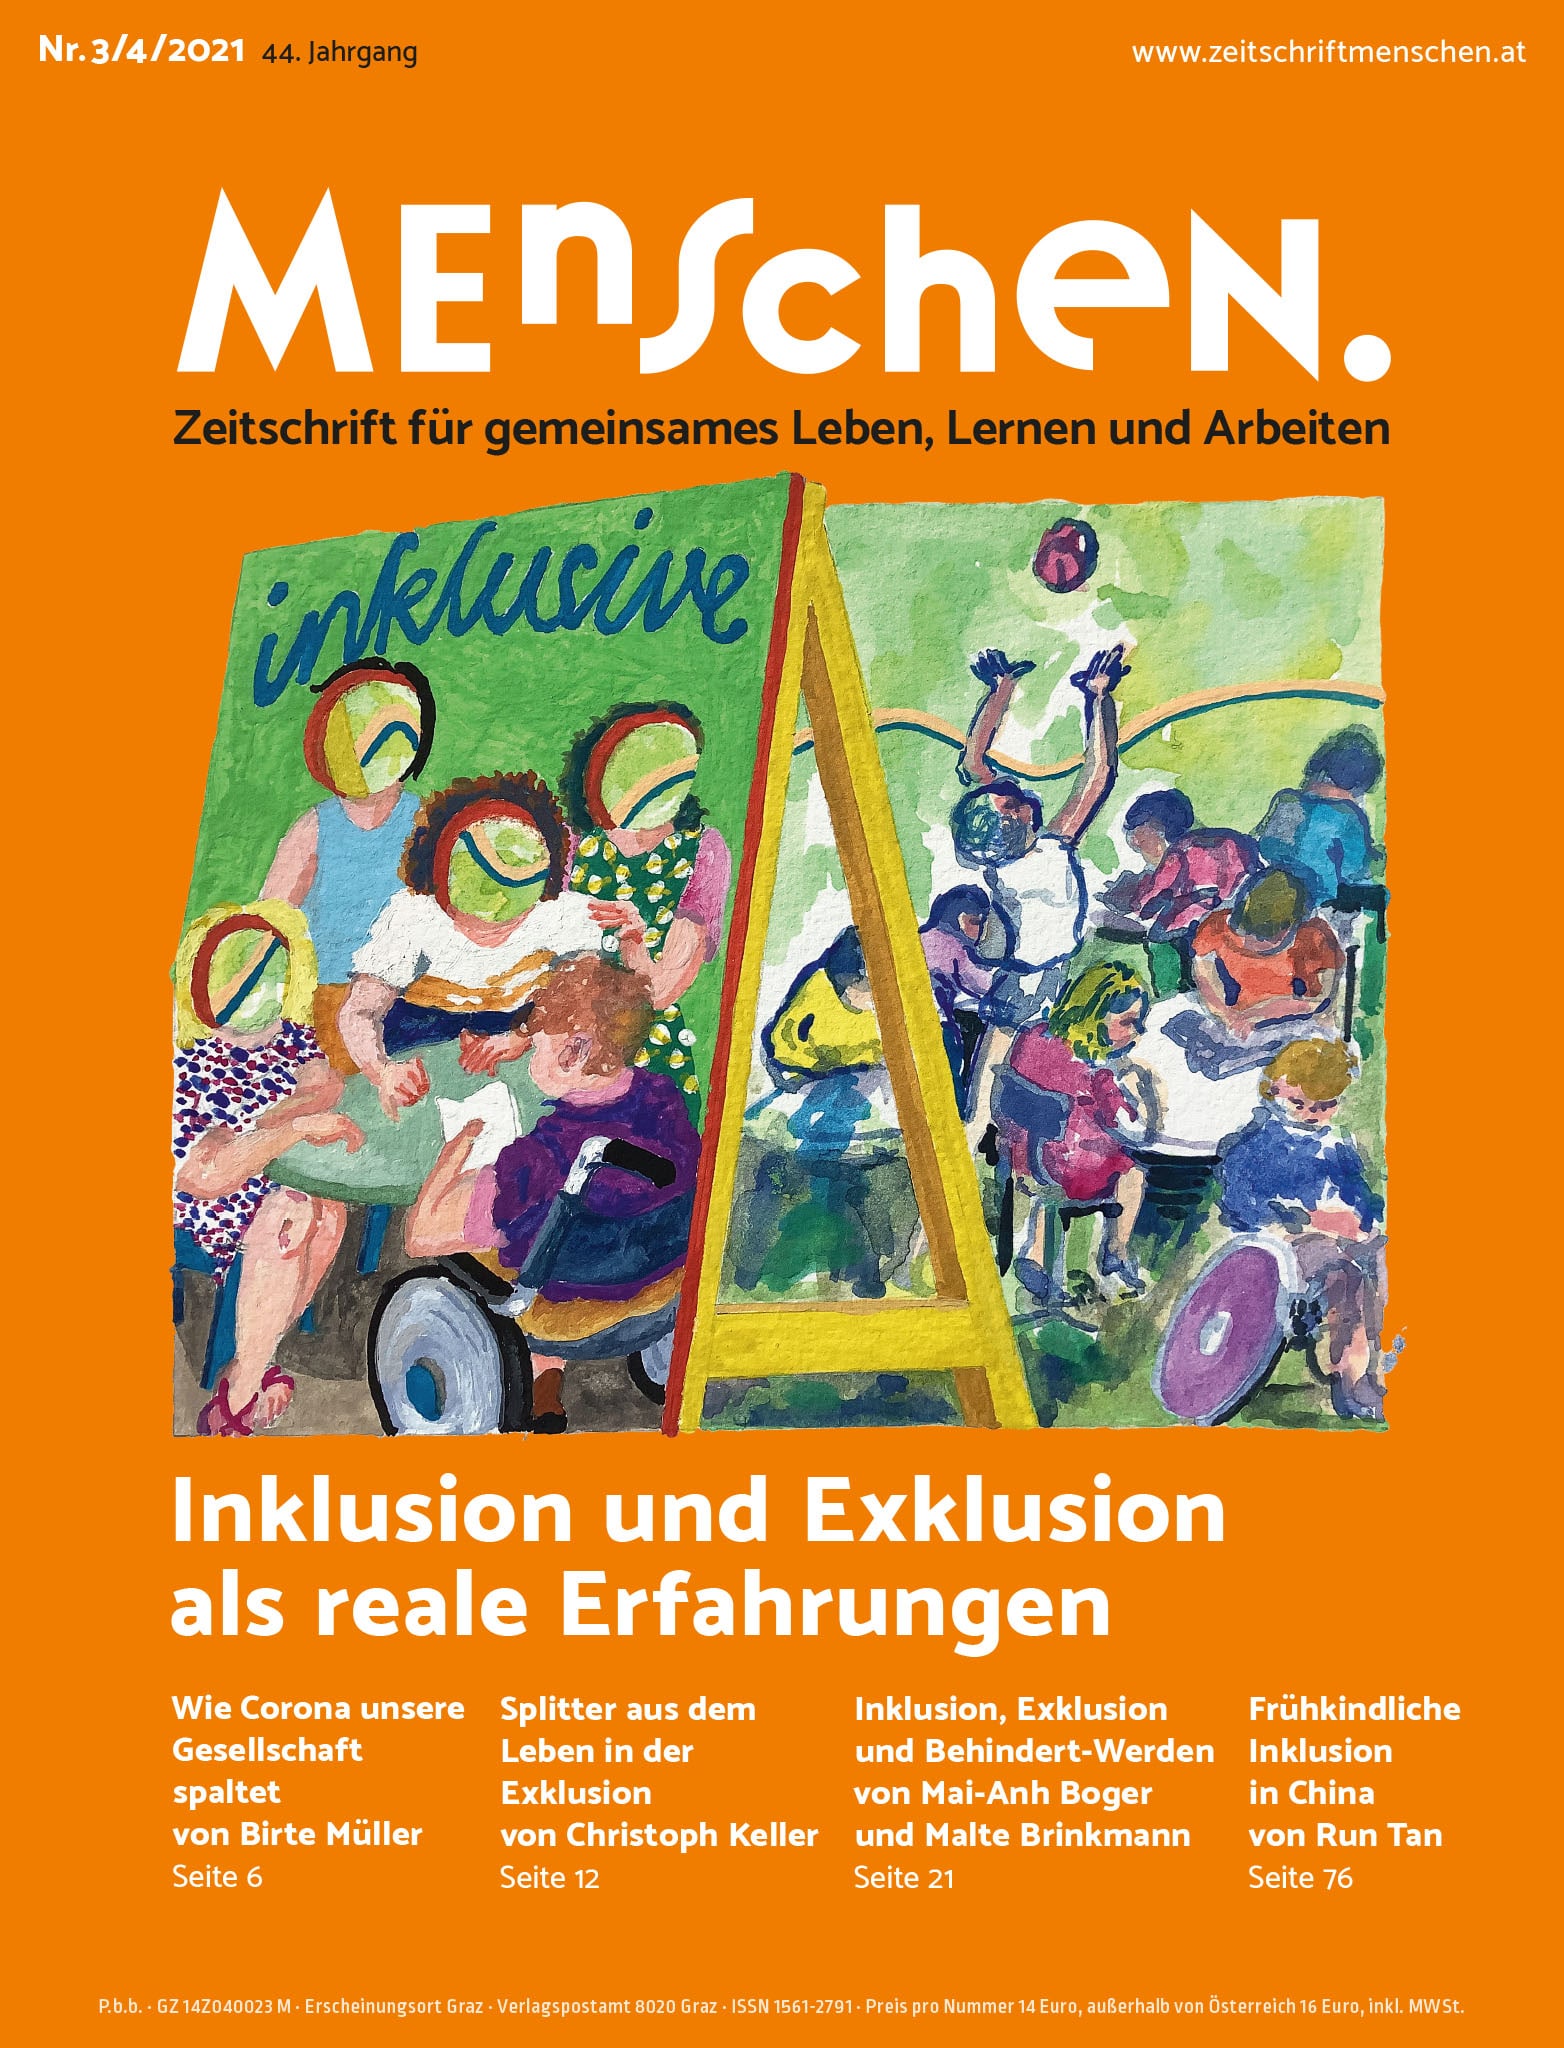 Titelbild Ausgabe 3/4/2021 "Inklusion und Exklusion als reale Erfahrungen"